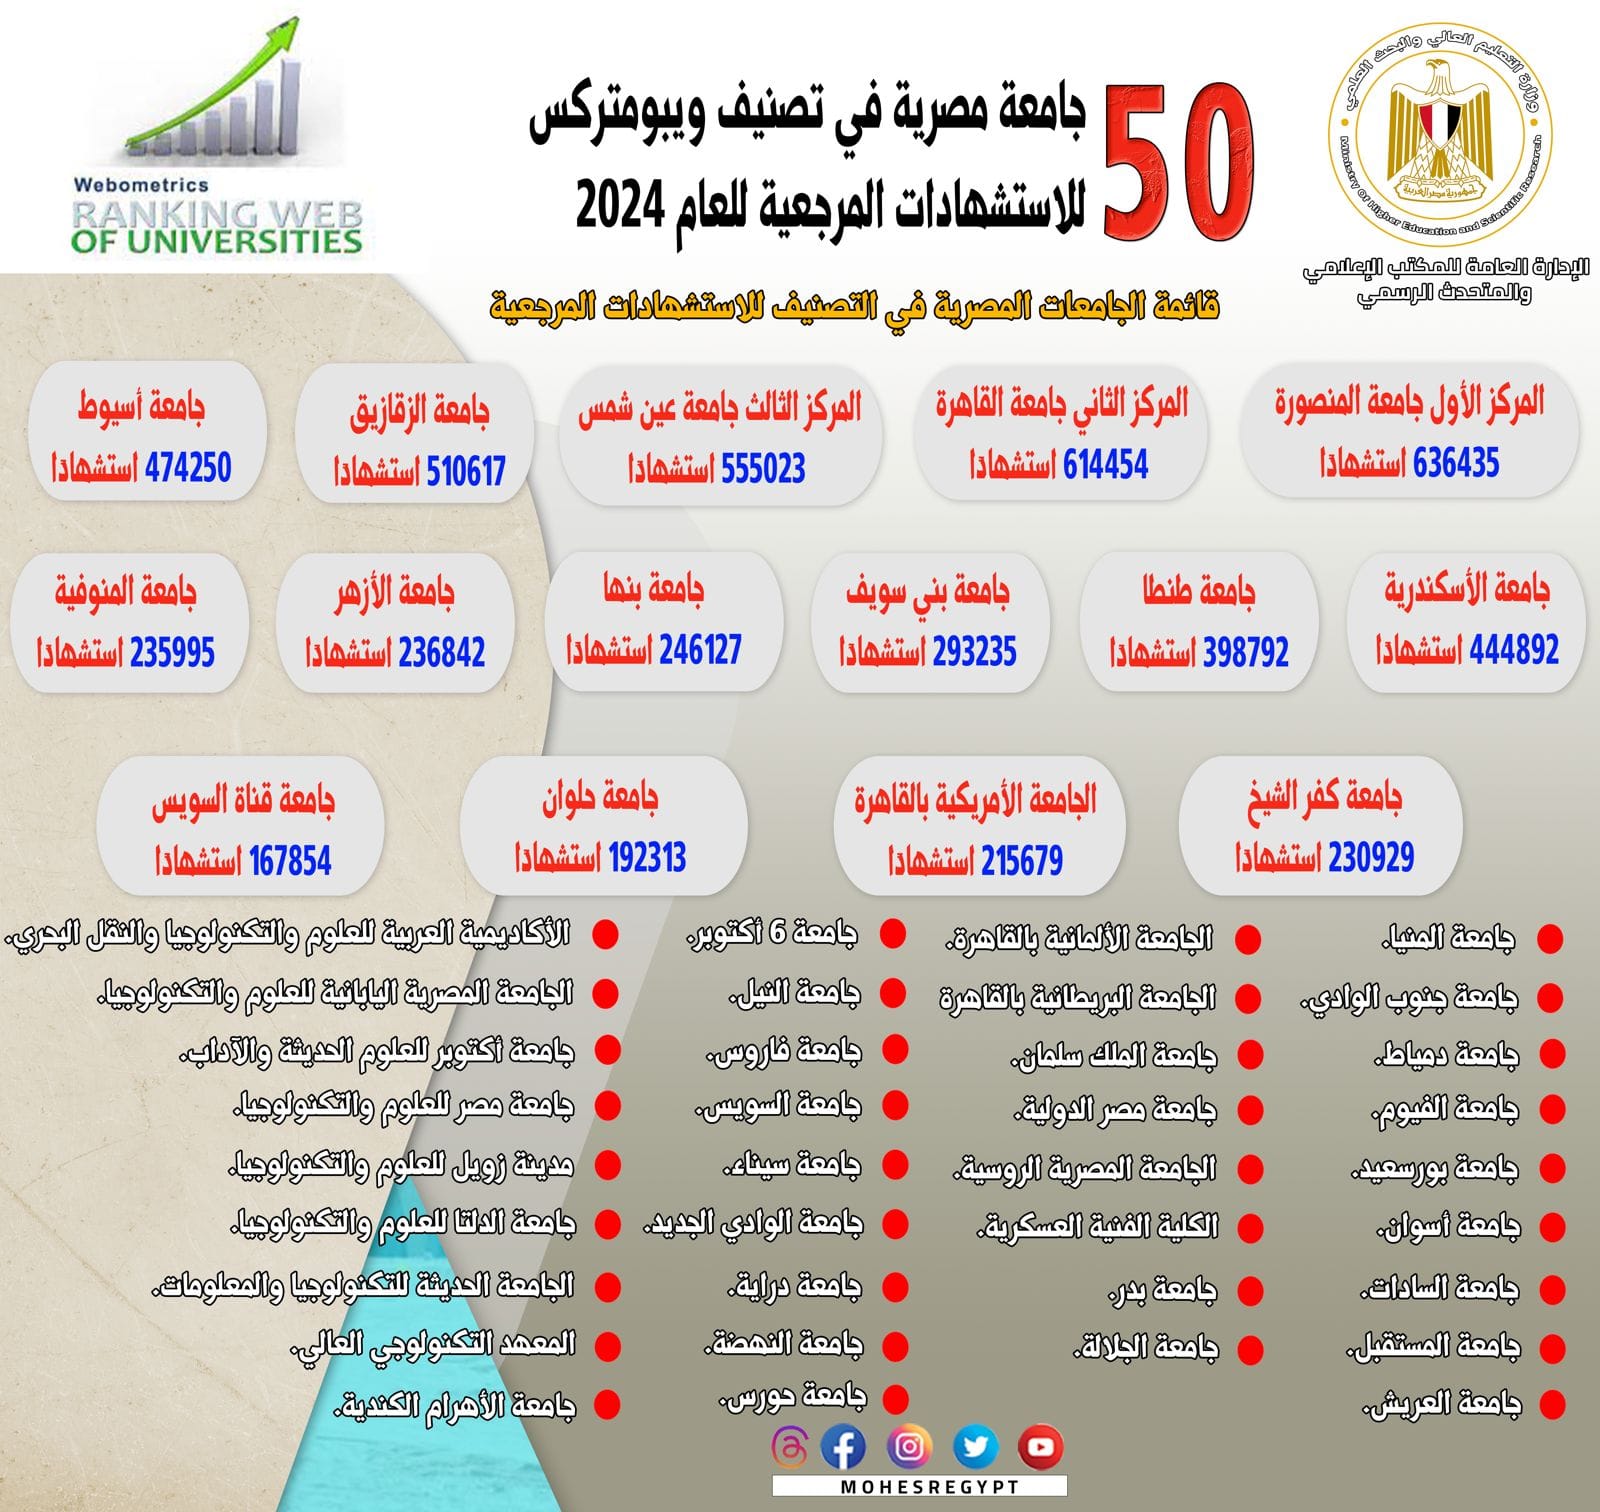 إدراج 50 جامعة مصرية في تصنيف ويبومتركس للاستشهادات المرجعية للعام 2024 2